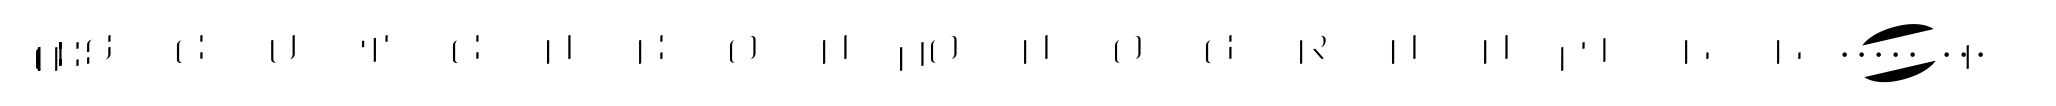 MFC Escutcheon Monogram Fill (10000 Impressions) image